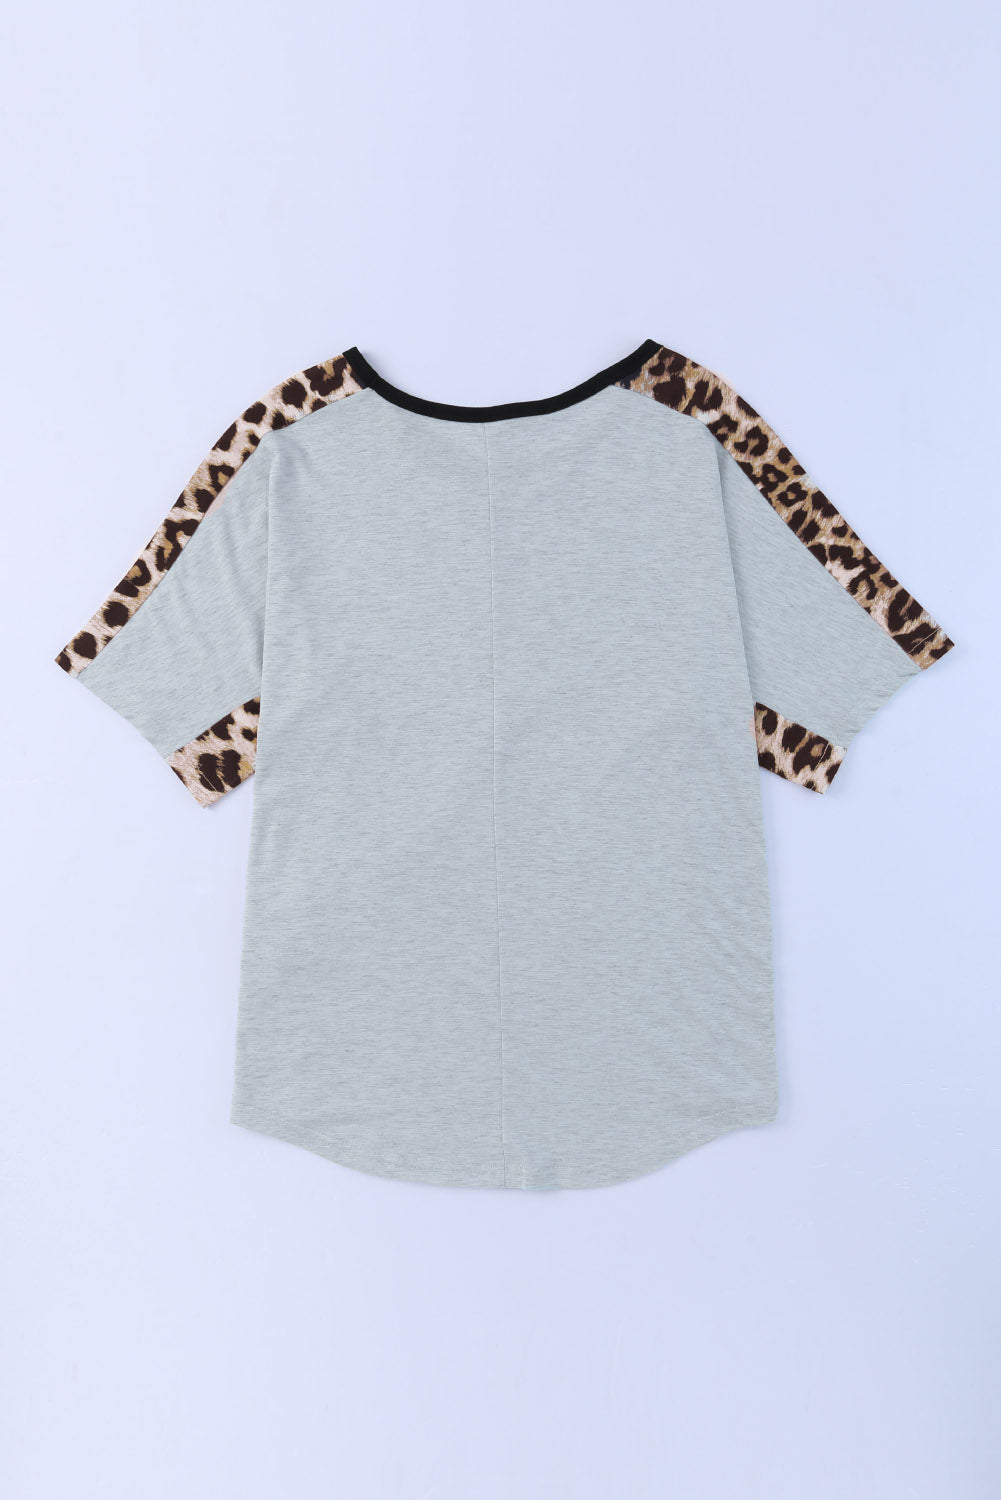 T-shirt gris à manches courtes et col rond avec épissage léopard